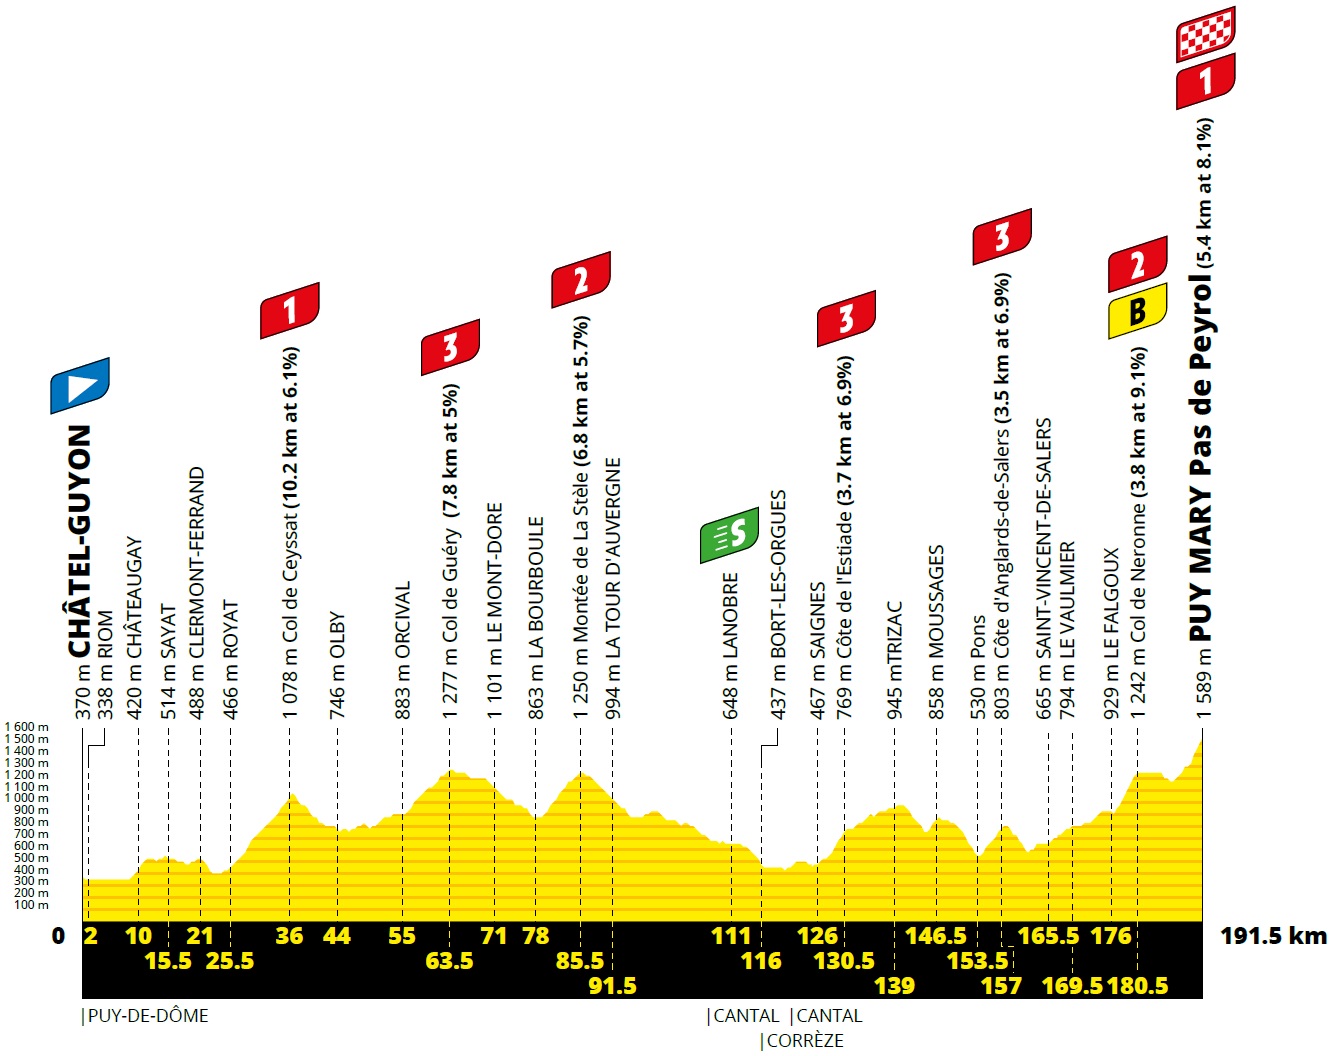 Hhenprofil Tour de France 2020 - Etappe 13